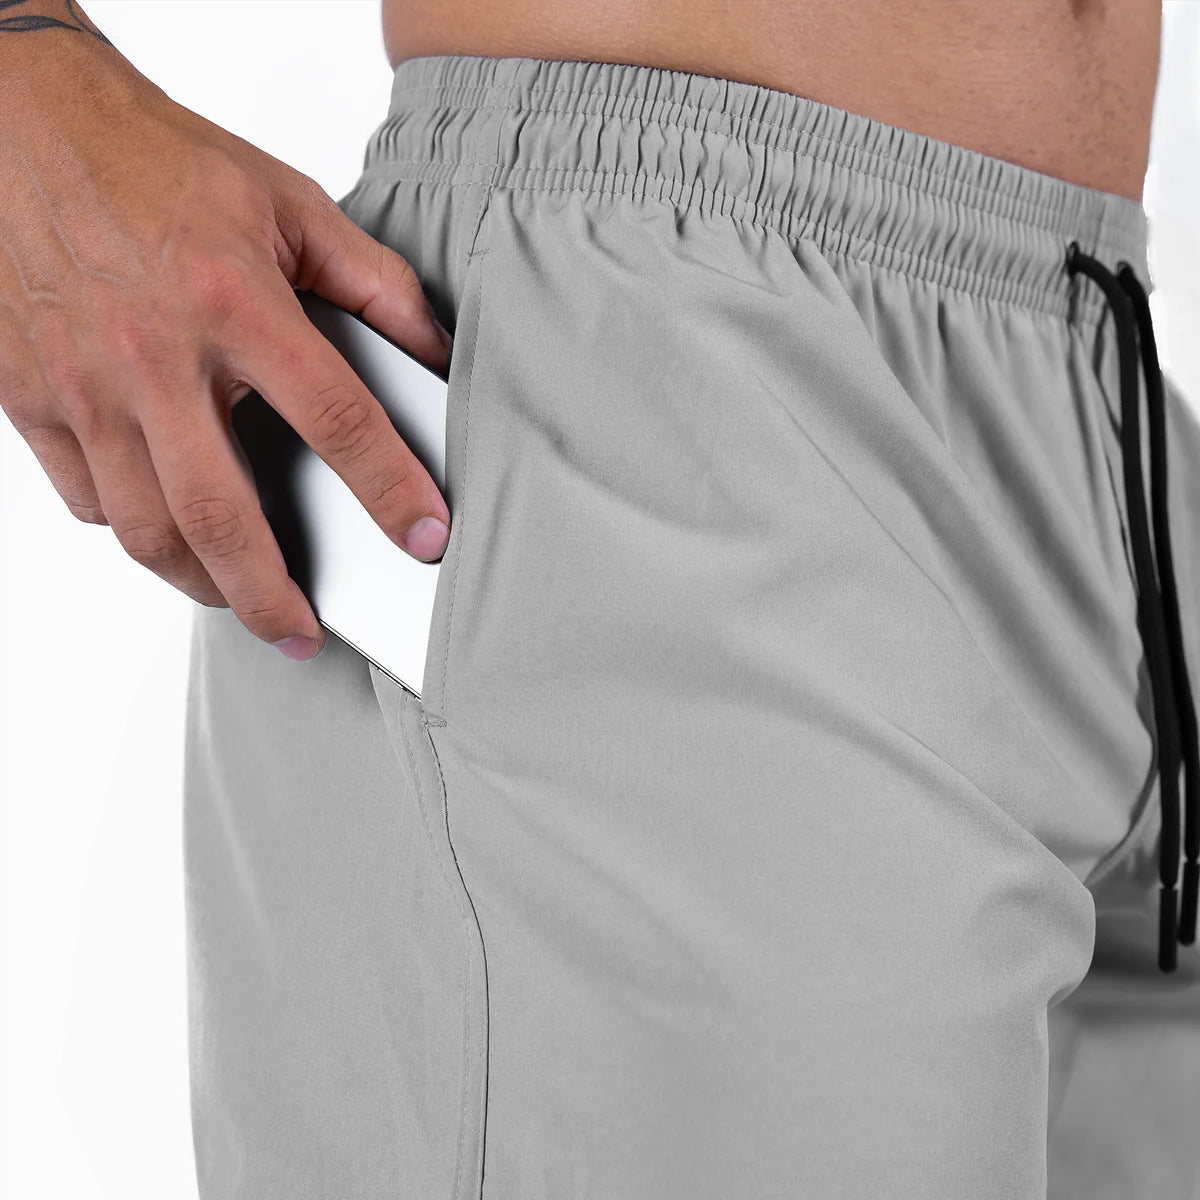 gr training shorts stone cropped pocket